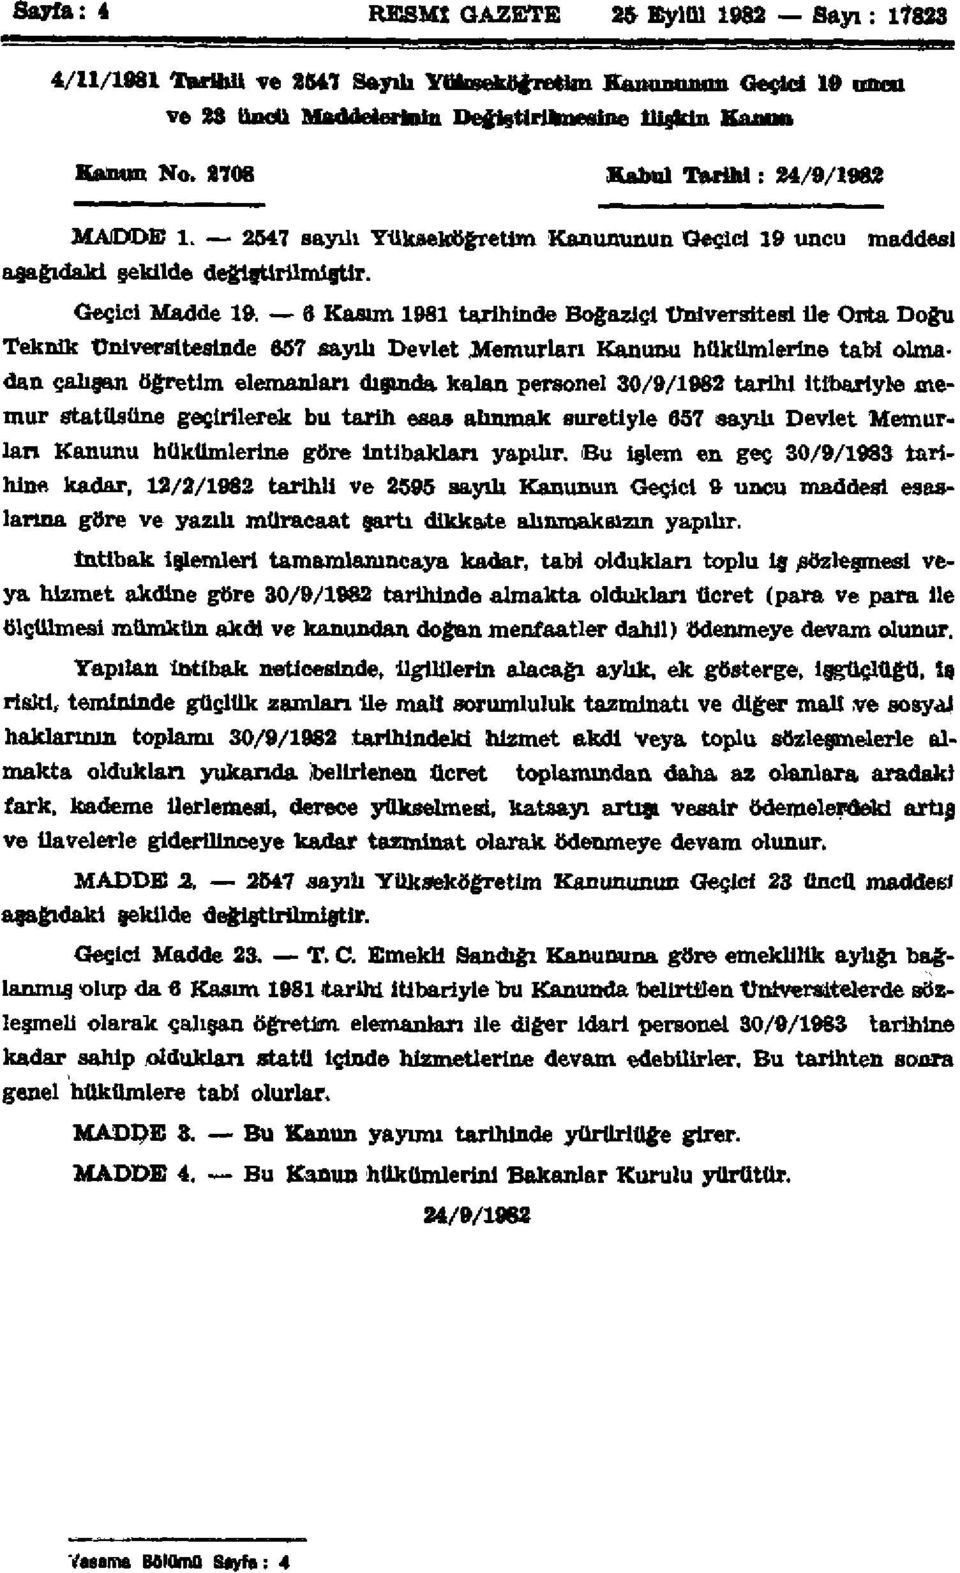 6 Kasım 1981 tarihinde Boğaziçi Üniversitesi ile Orta Doğu Teknik Üniversitesinde 657 sayılı Devlet Memurları Kanunu hükümlerine tabi olmadan çalışan öğretim elemanları dışında kalan personel